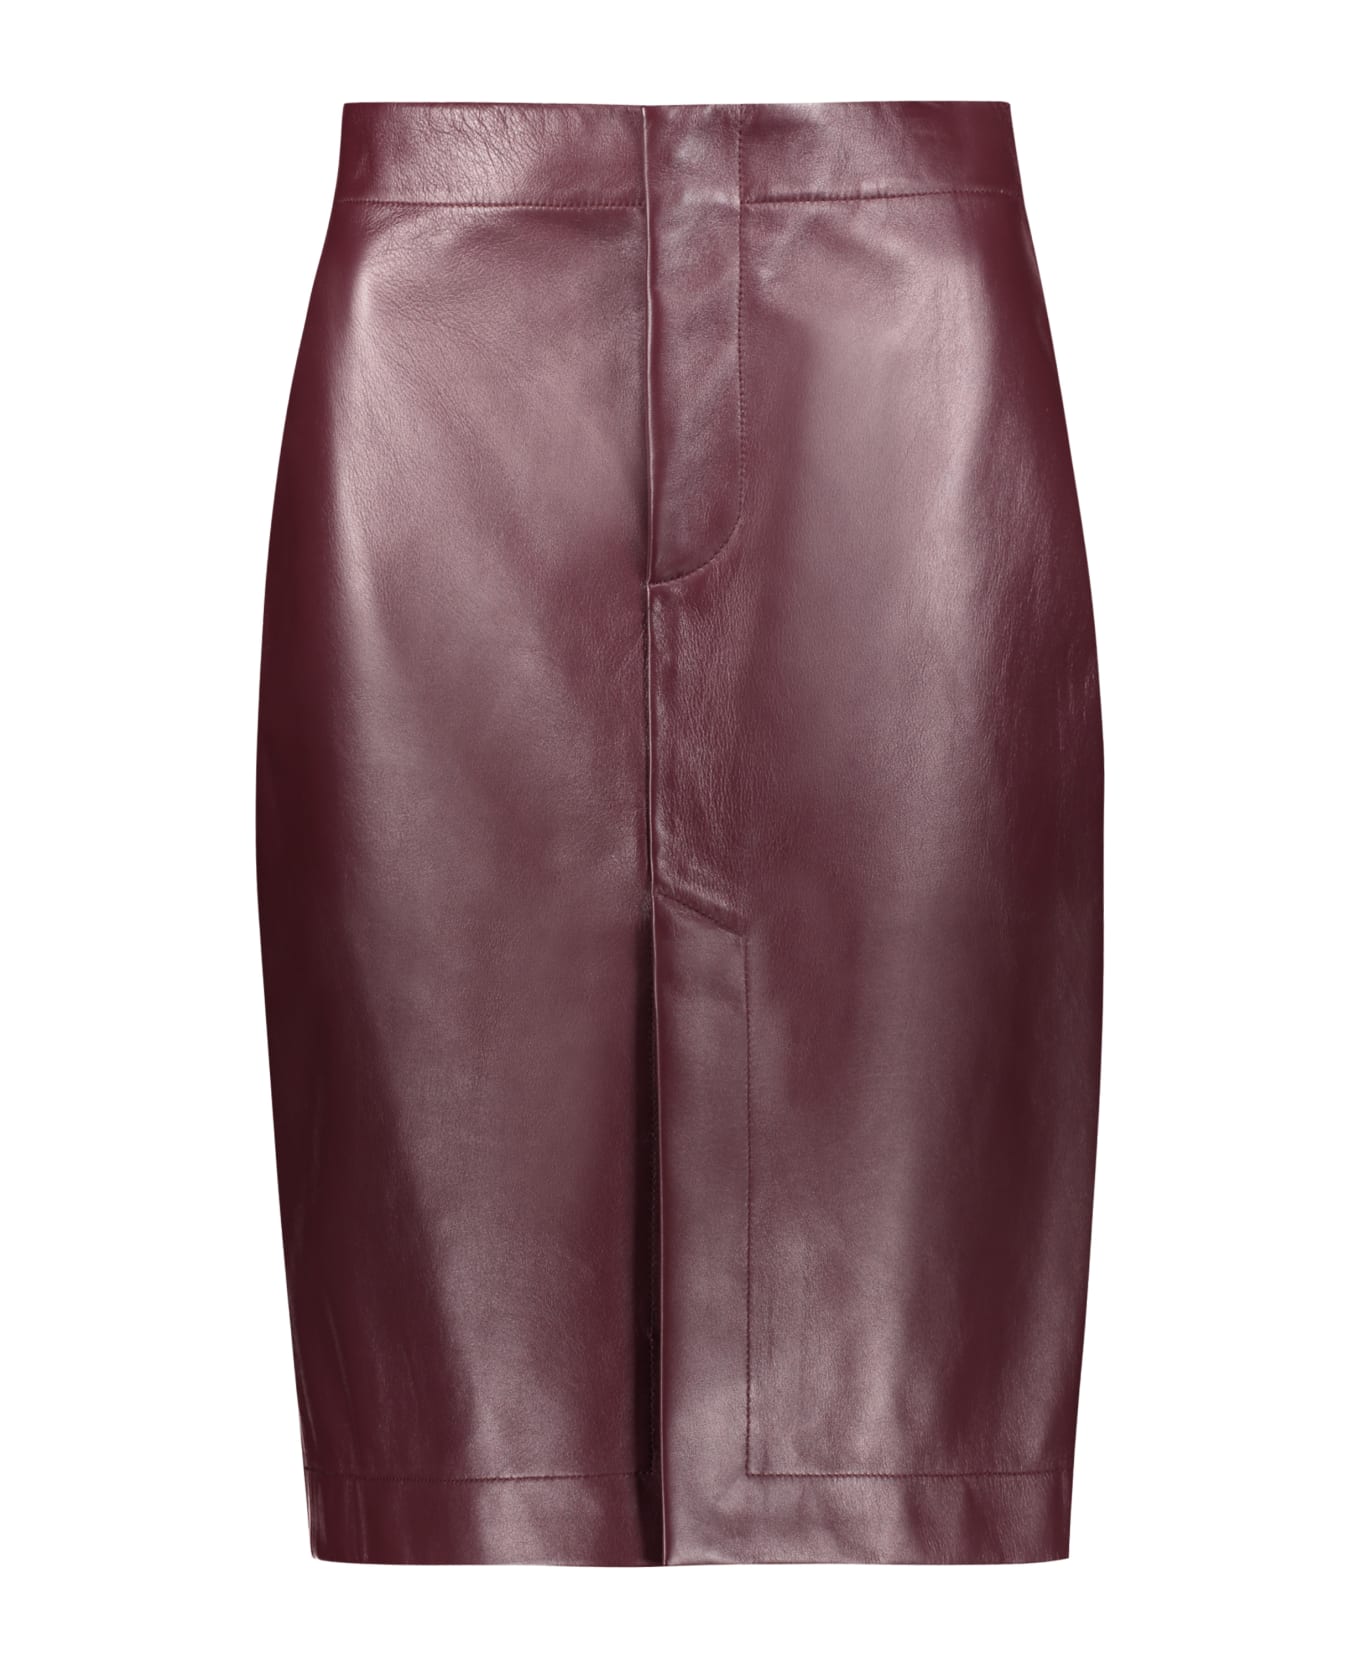 Bottega Veneta Leather Skirt - Burgundy